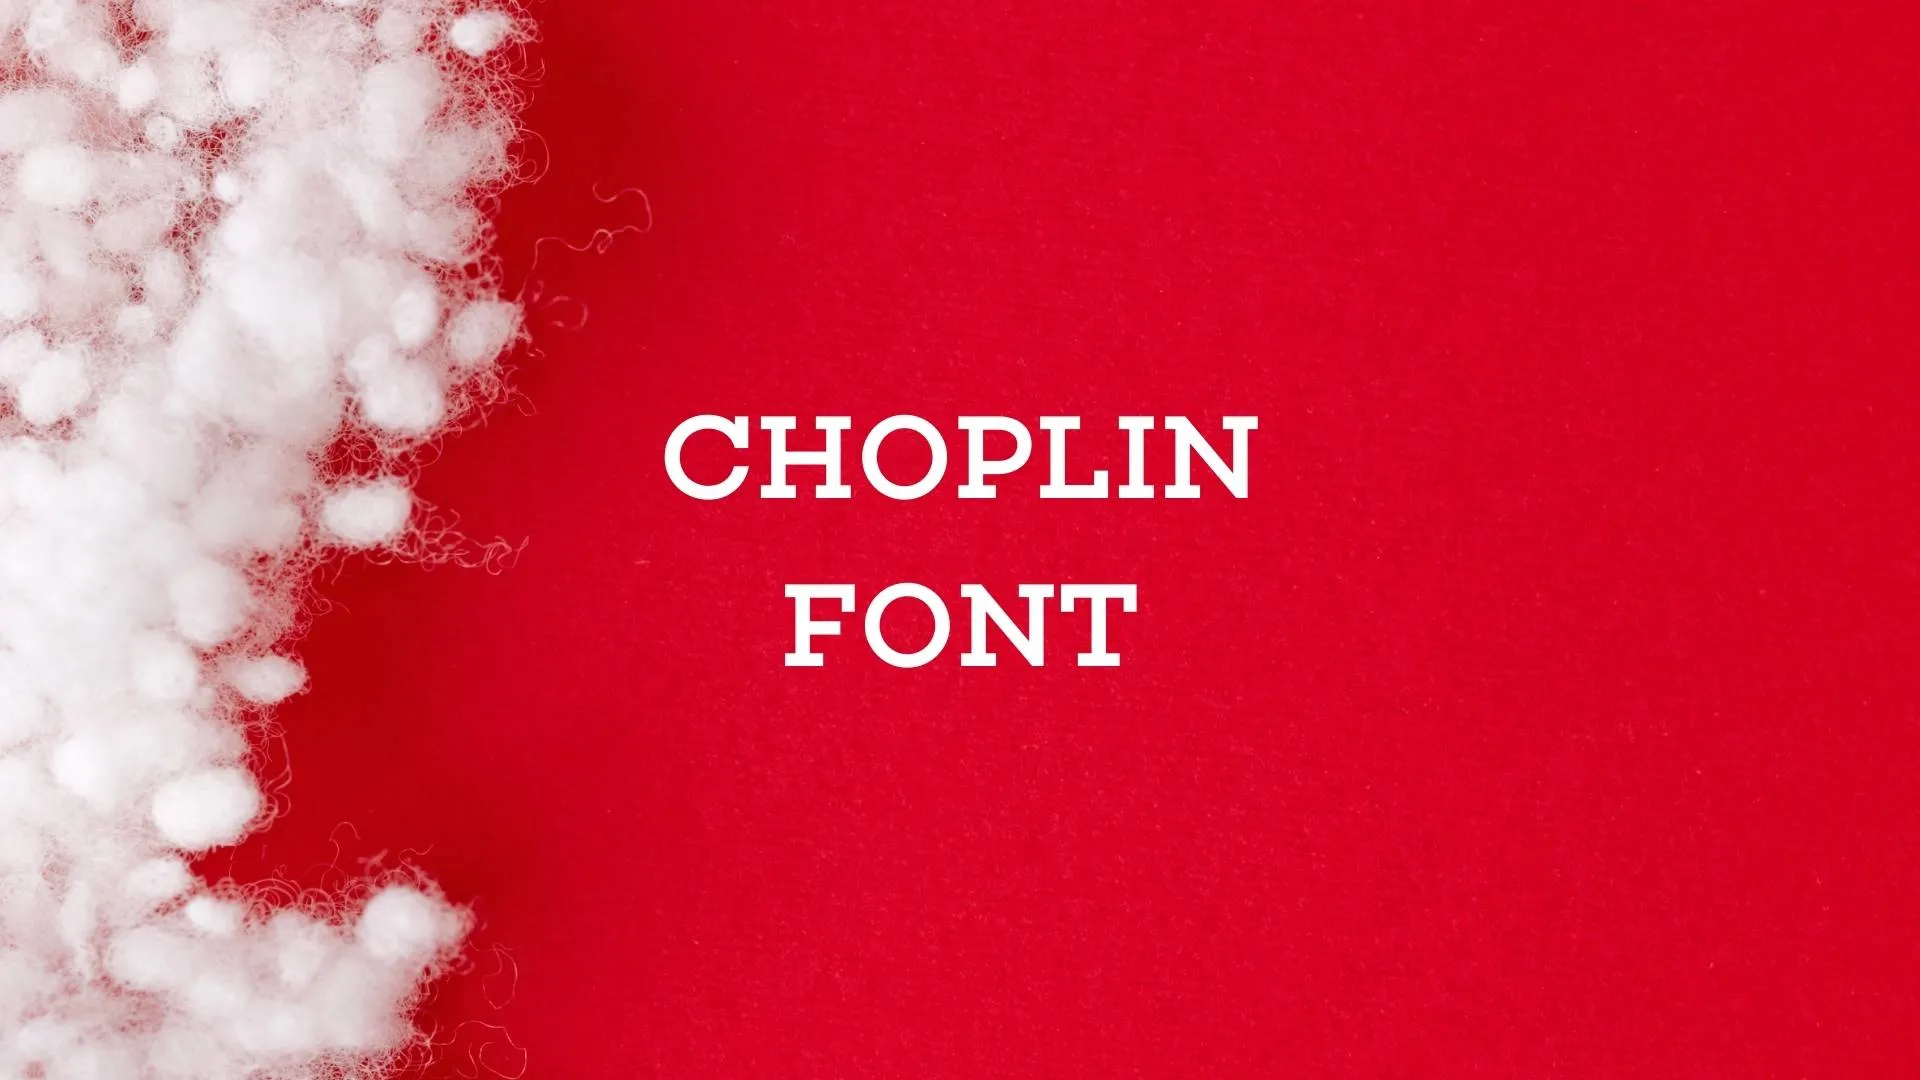 Choplin Font